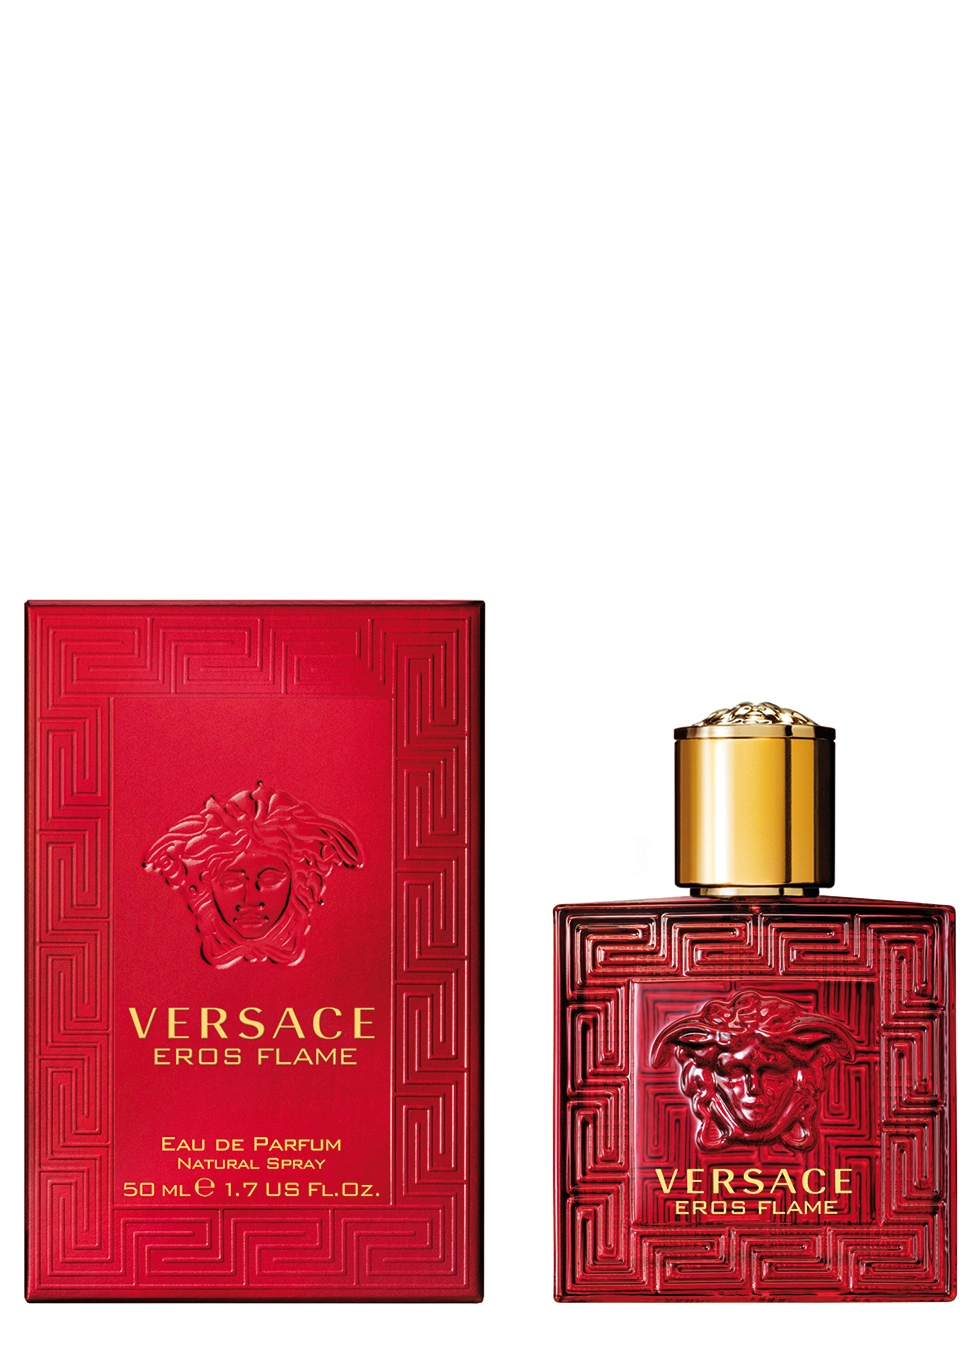 Versace Eros Flame Eau de Parfum 50ml 